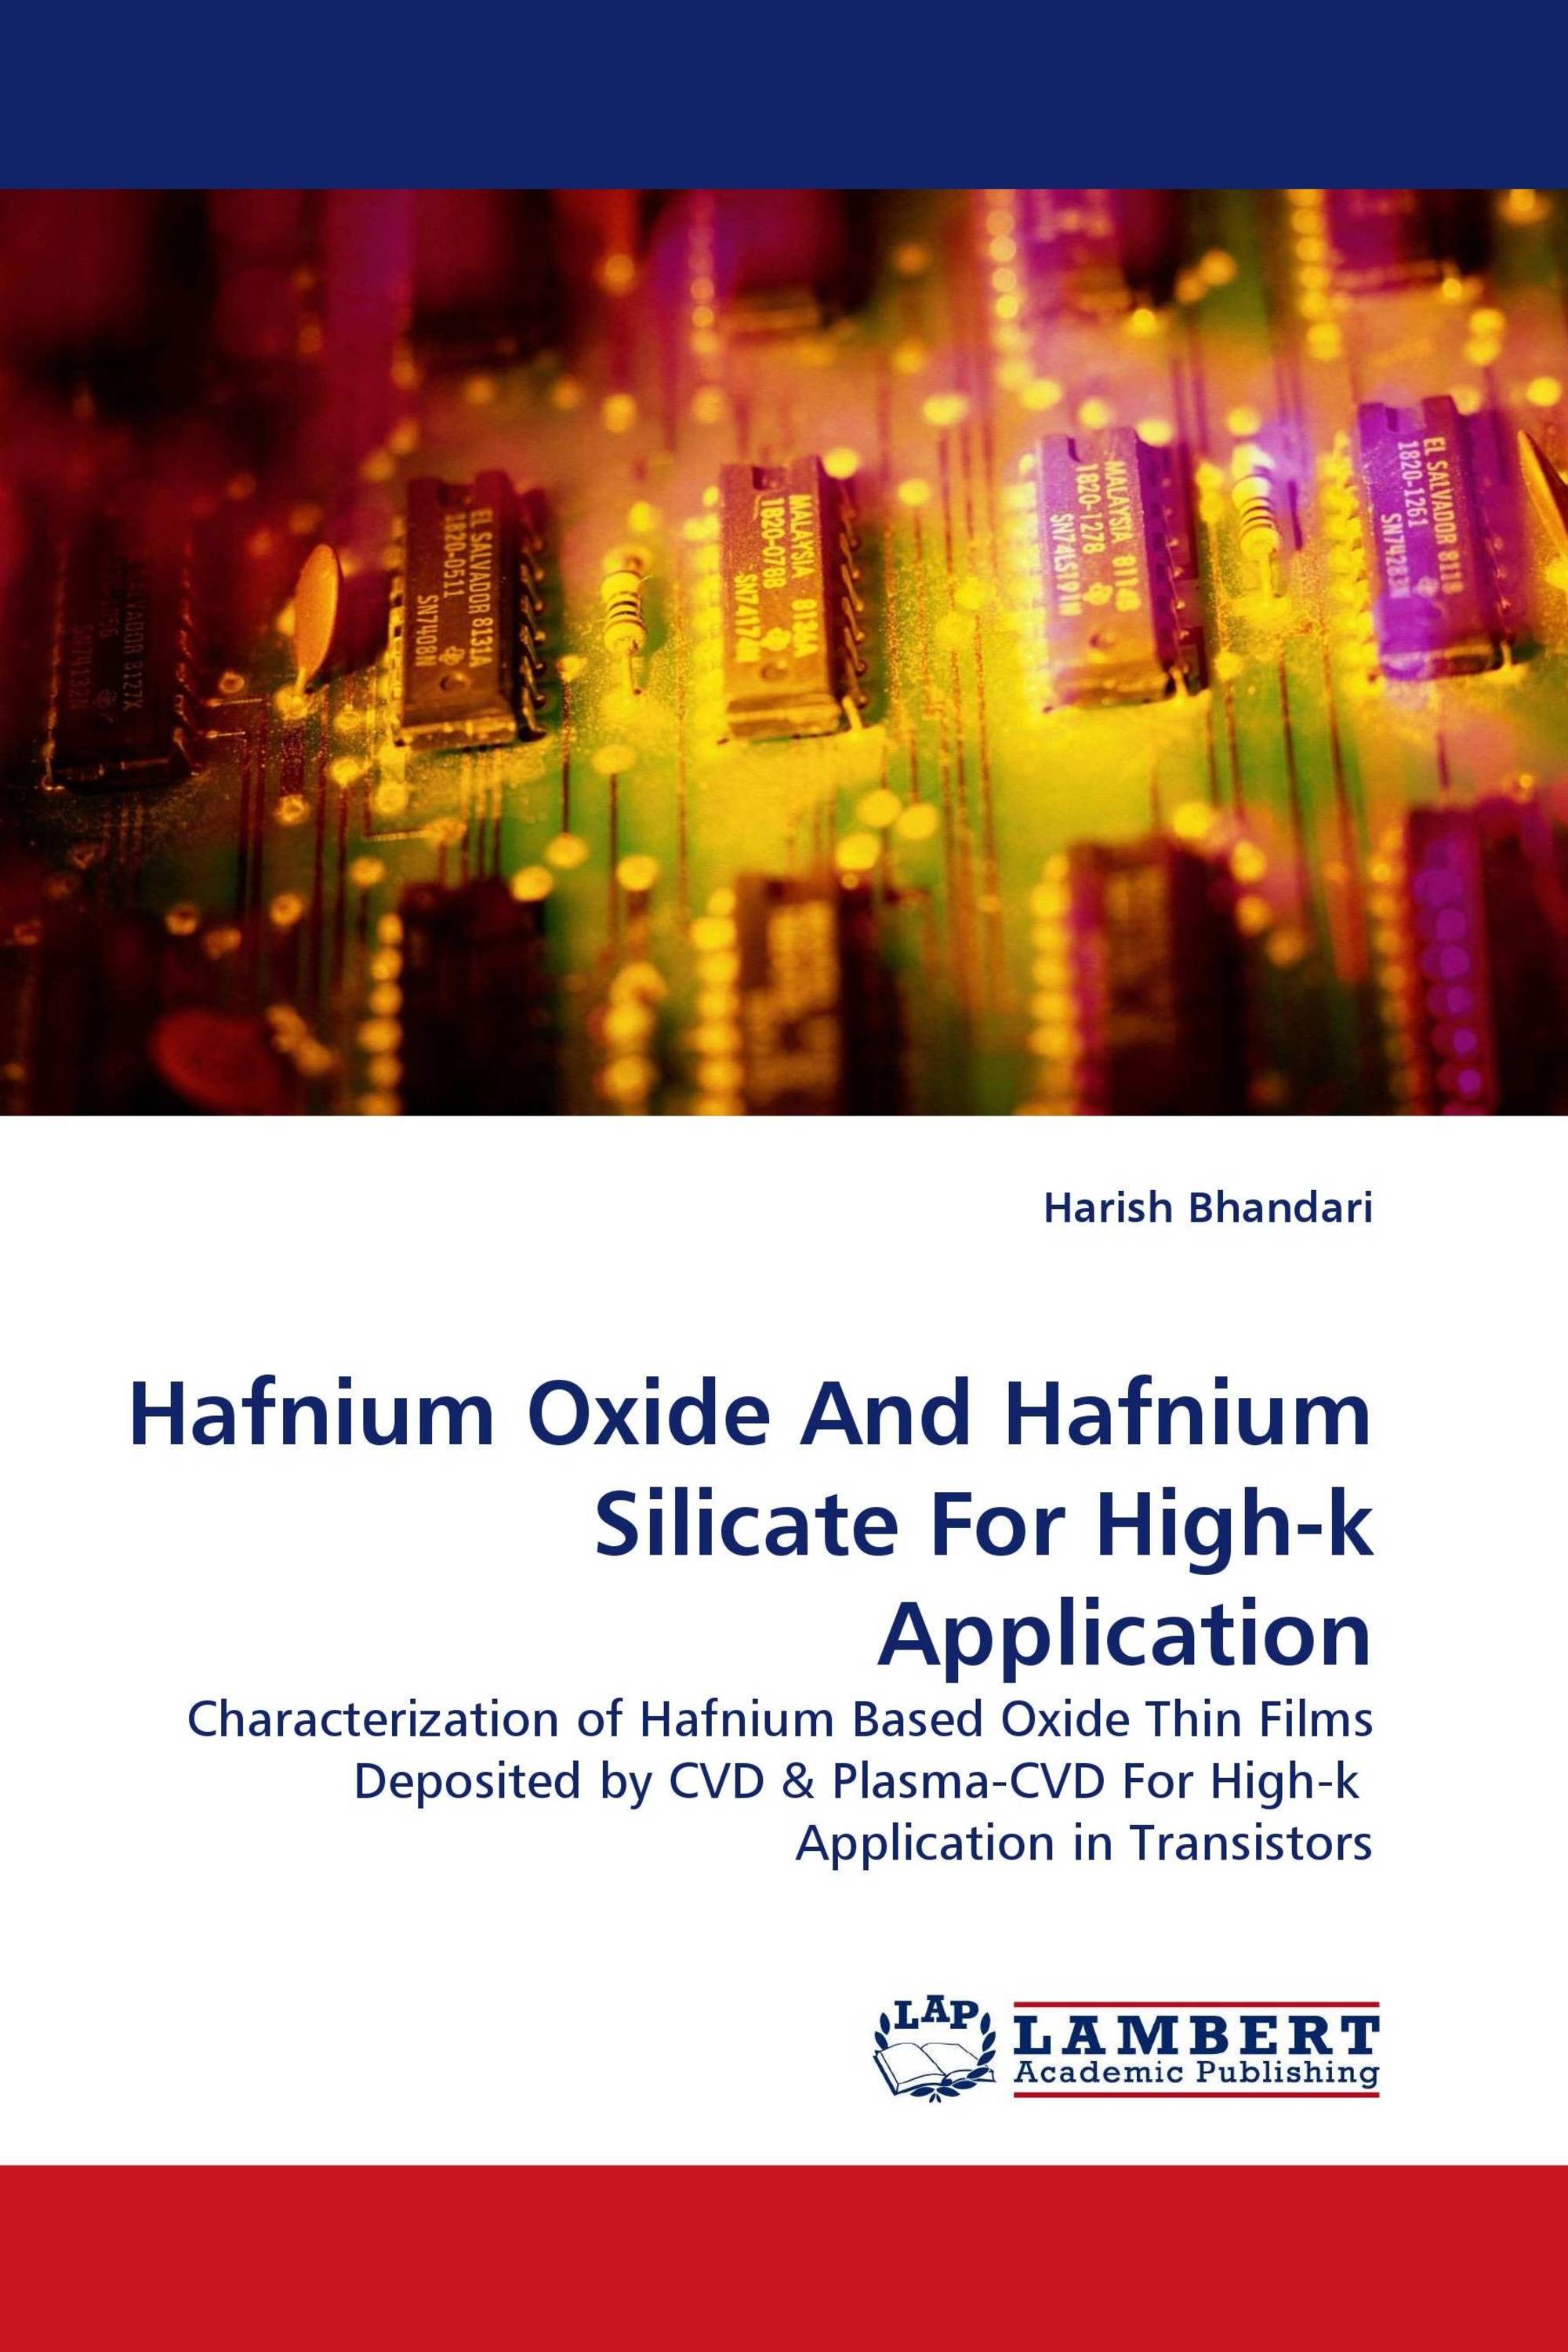 Hafnium Oxide And Hafnium Silicate For High-k Application